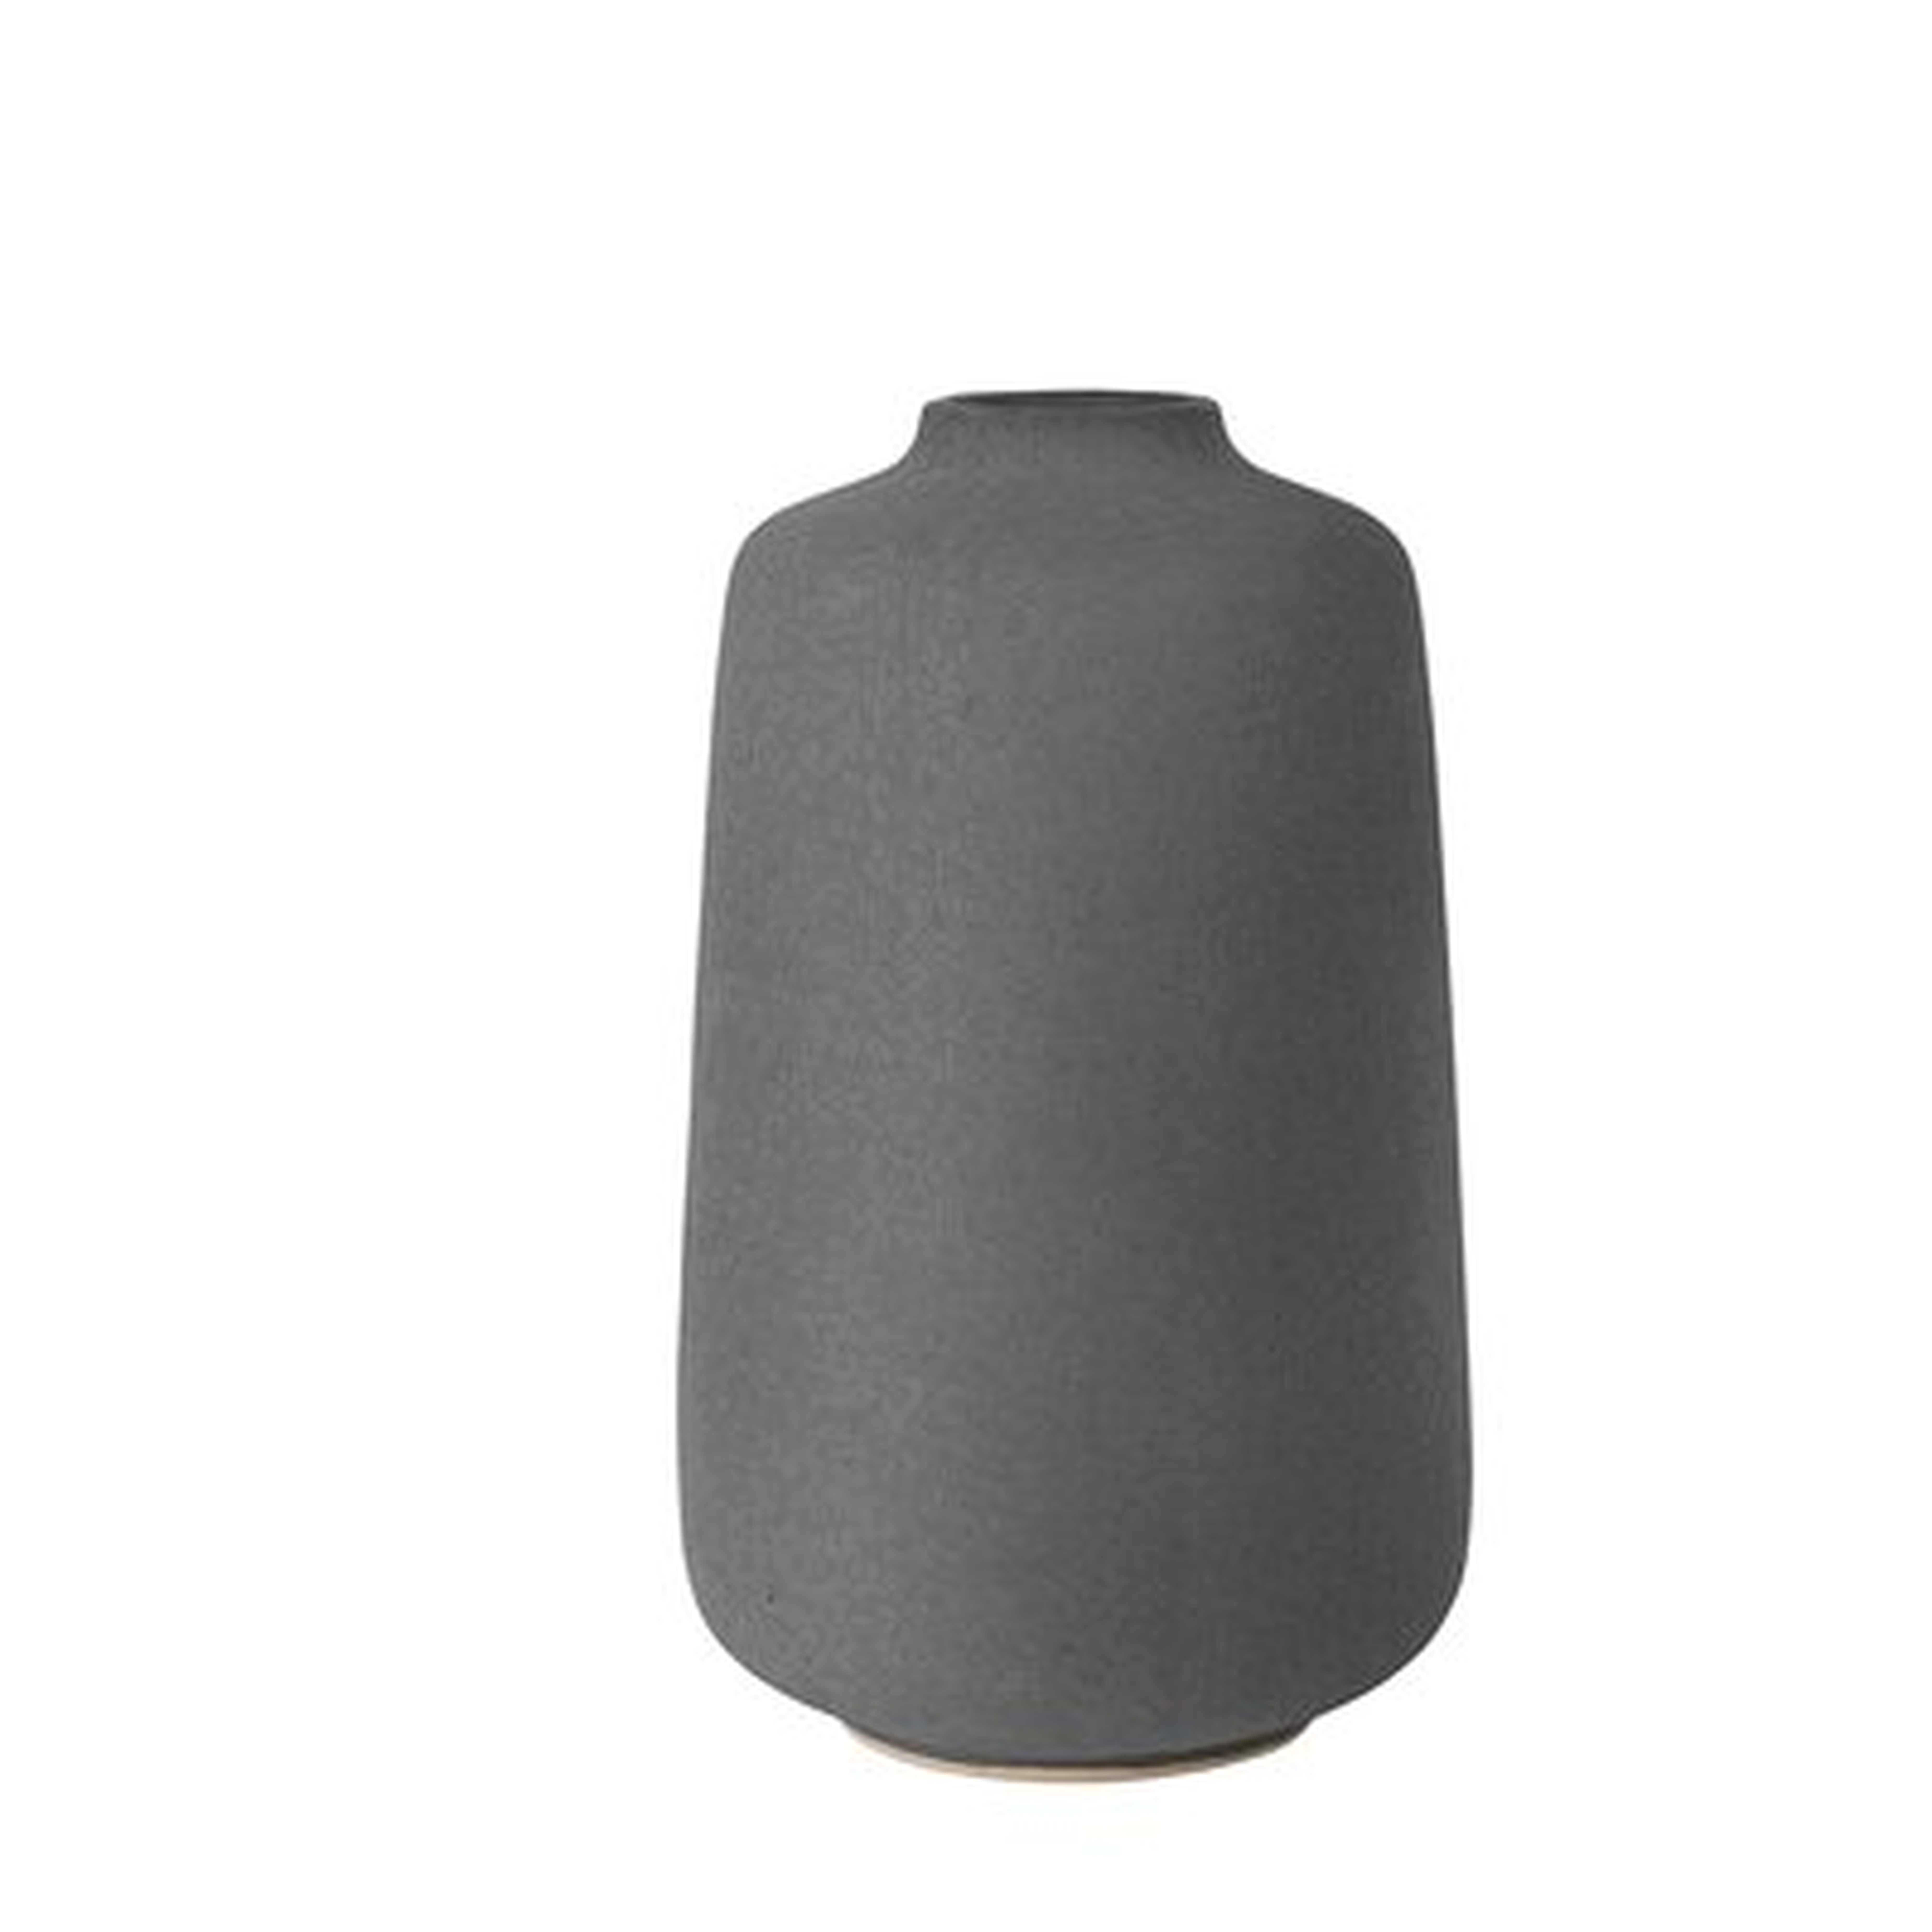 Rudea Vase Ceramic 6X10 - Wayfair